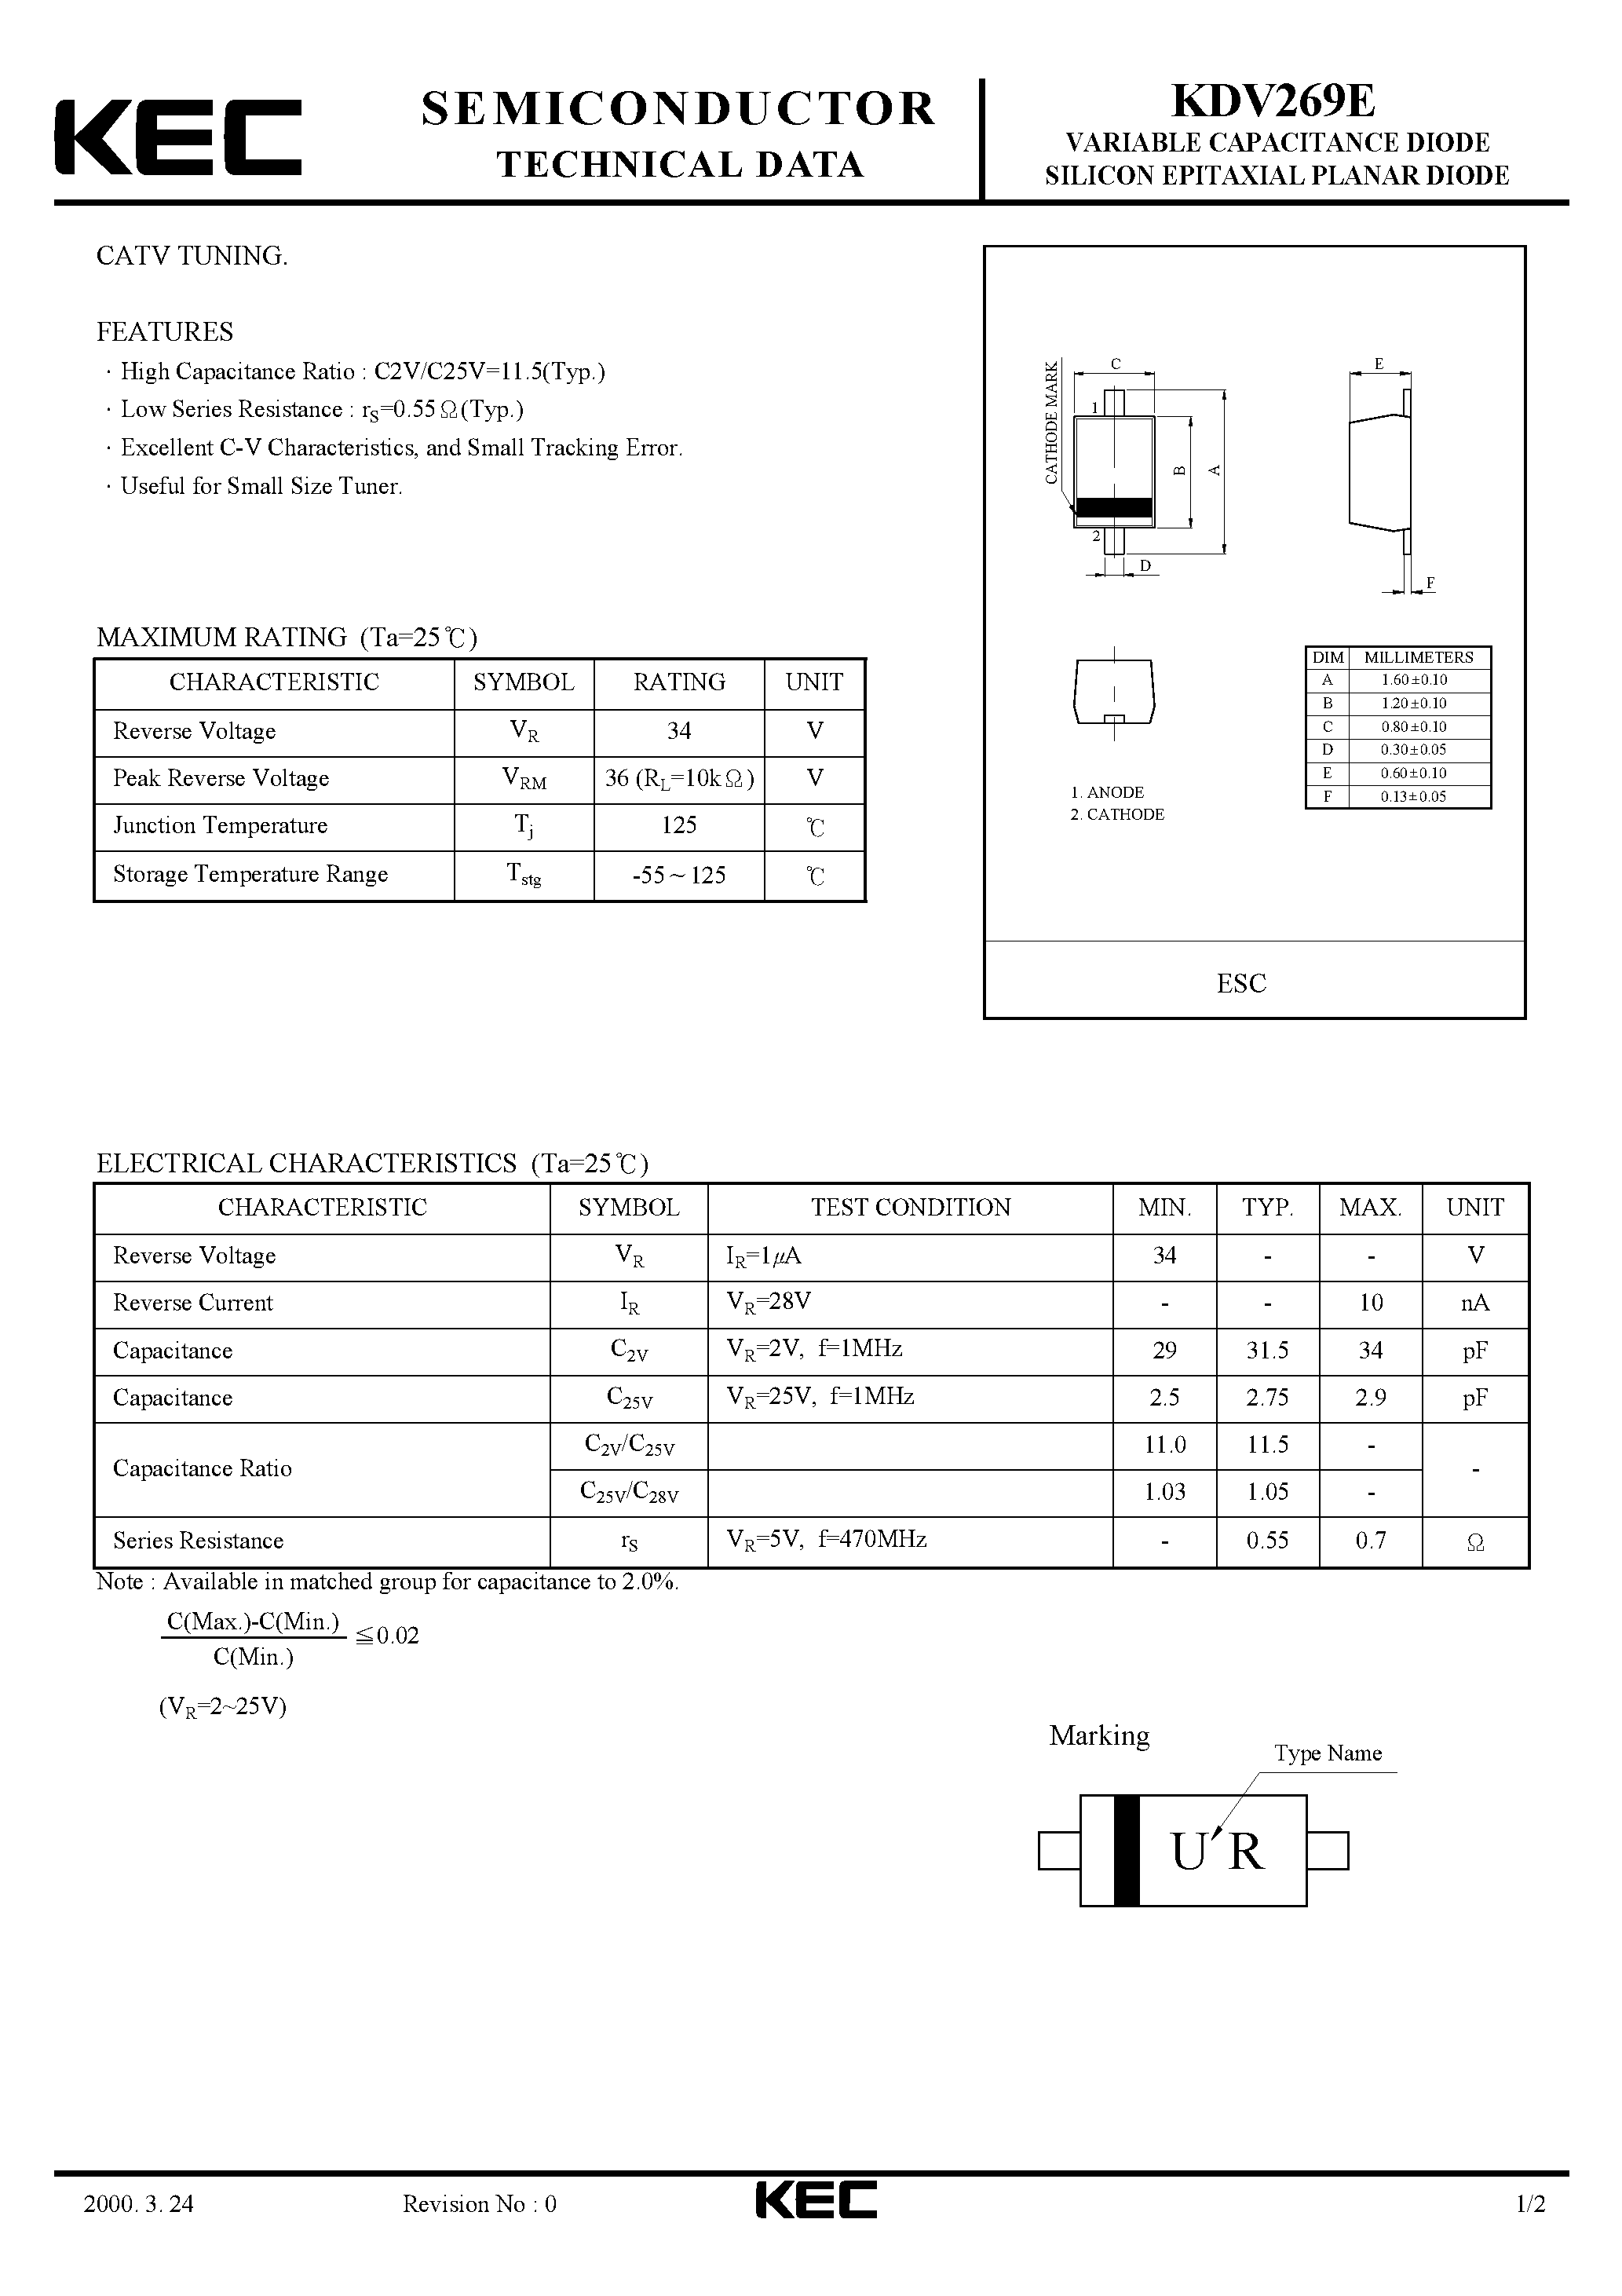 Datasheet KDV269E - VARIABLE CAPACITANCE DIODE SILICON EPITAXIAL PLANAR DIODE(CATV TUNING) page 1